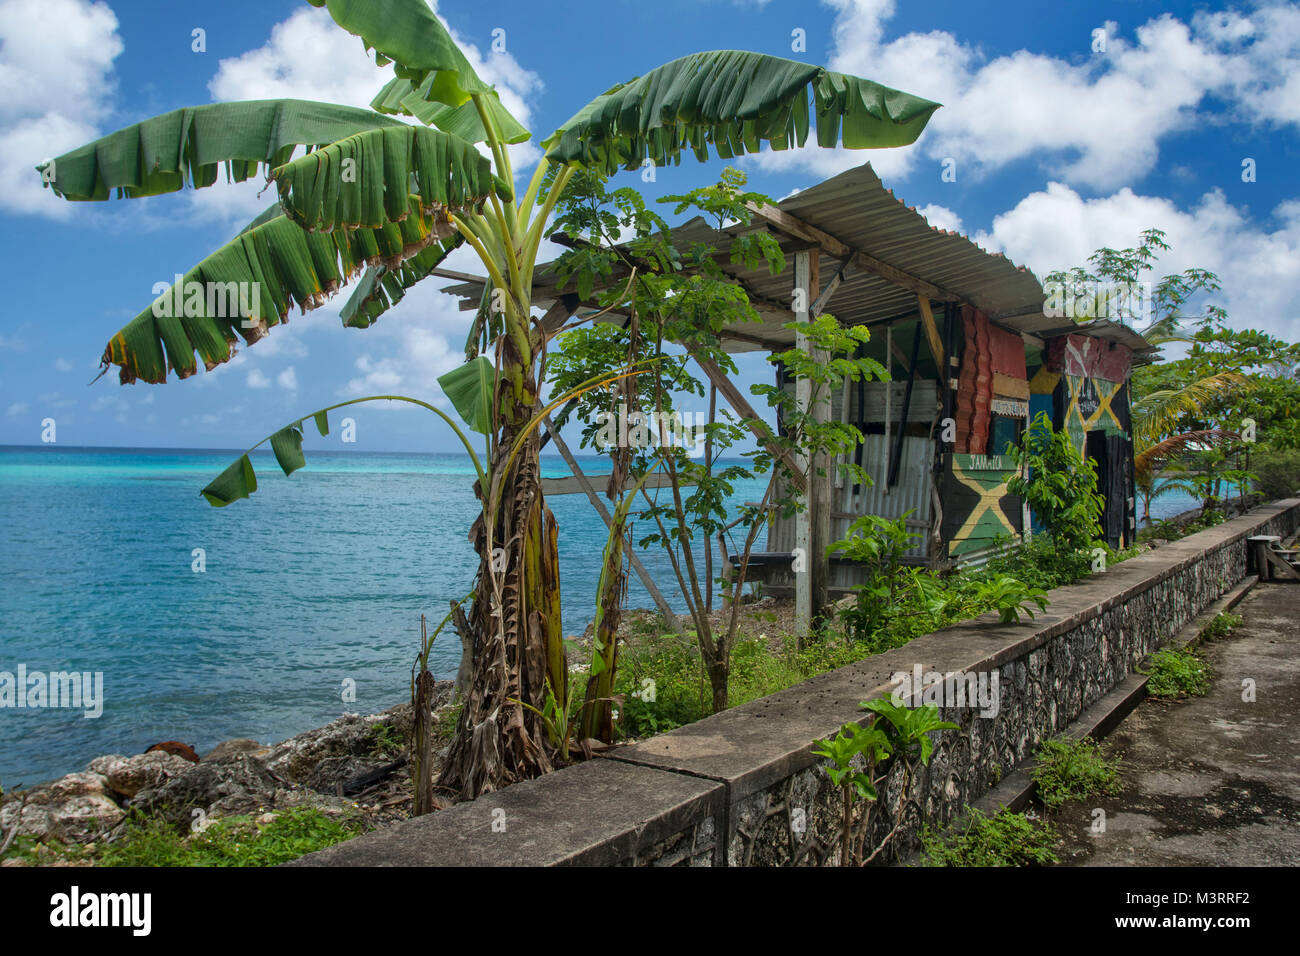 Banana trees along the caribbean coastline on the way to James Bond beach, Ocho Rios, Jamaica Stock Photo